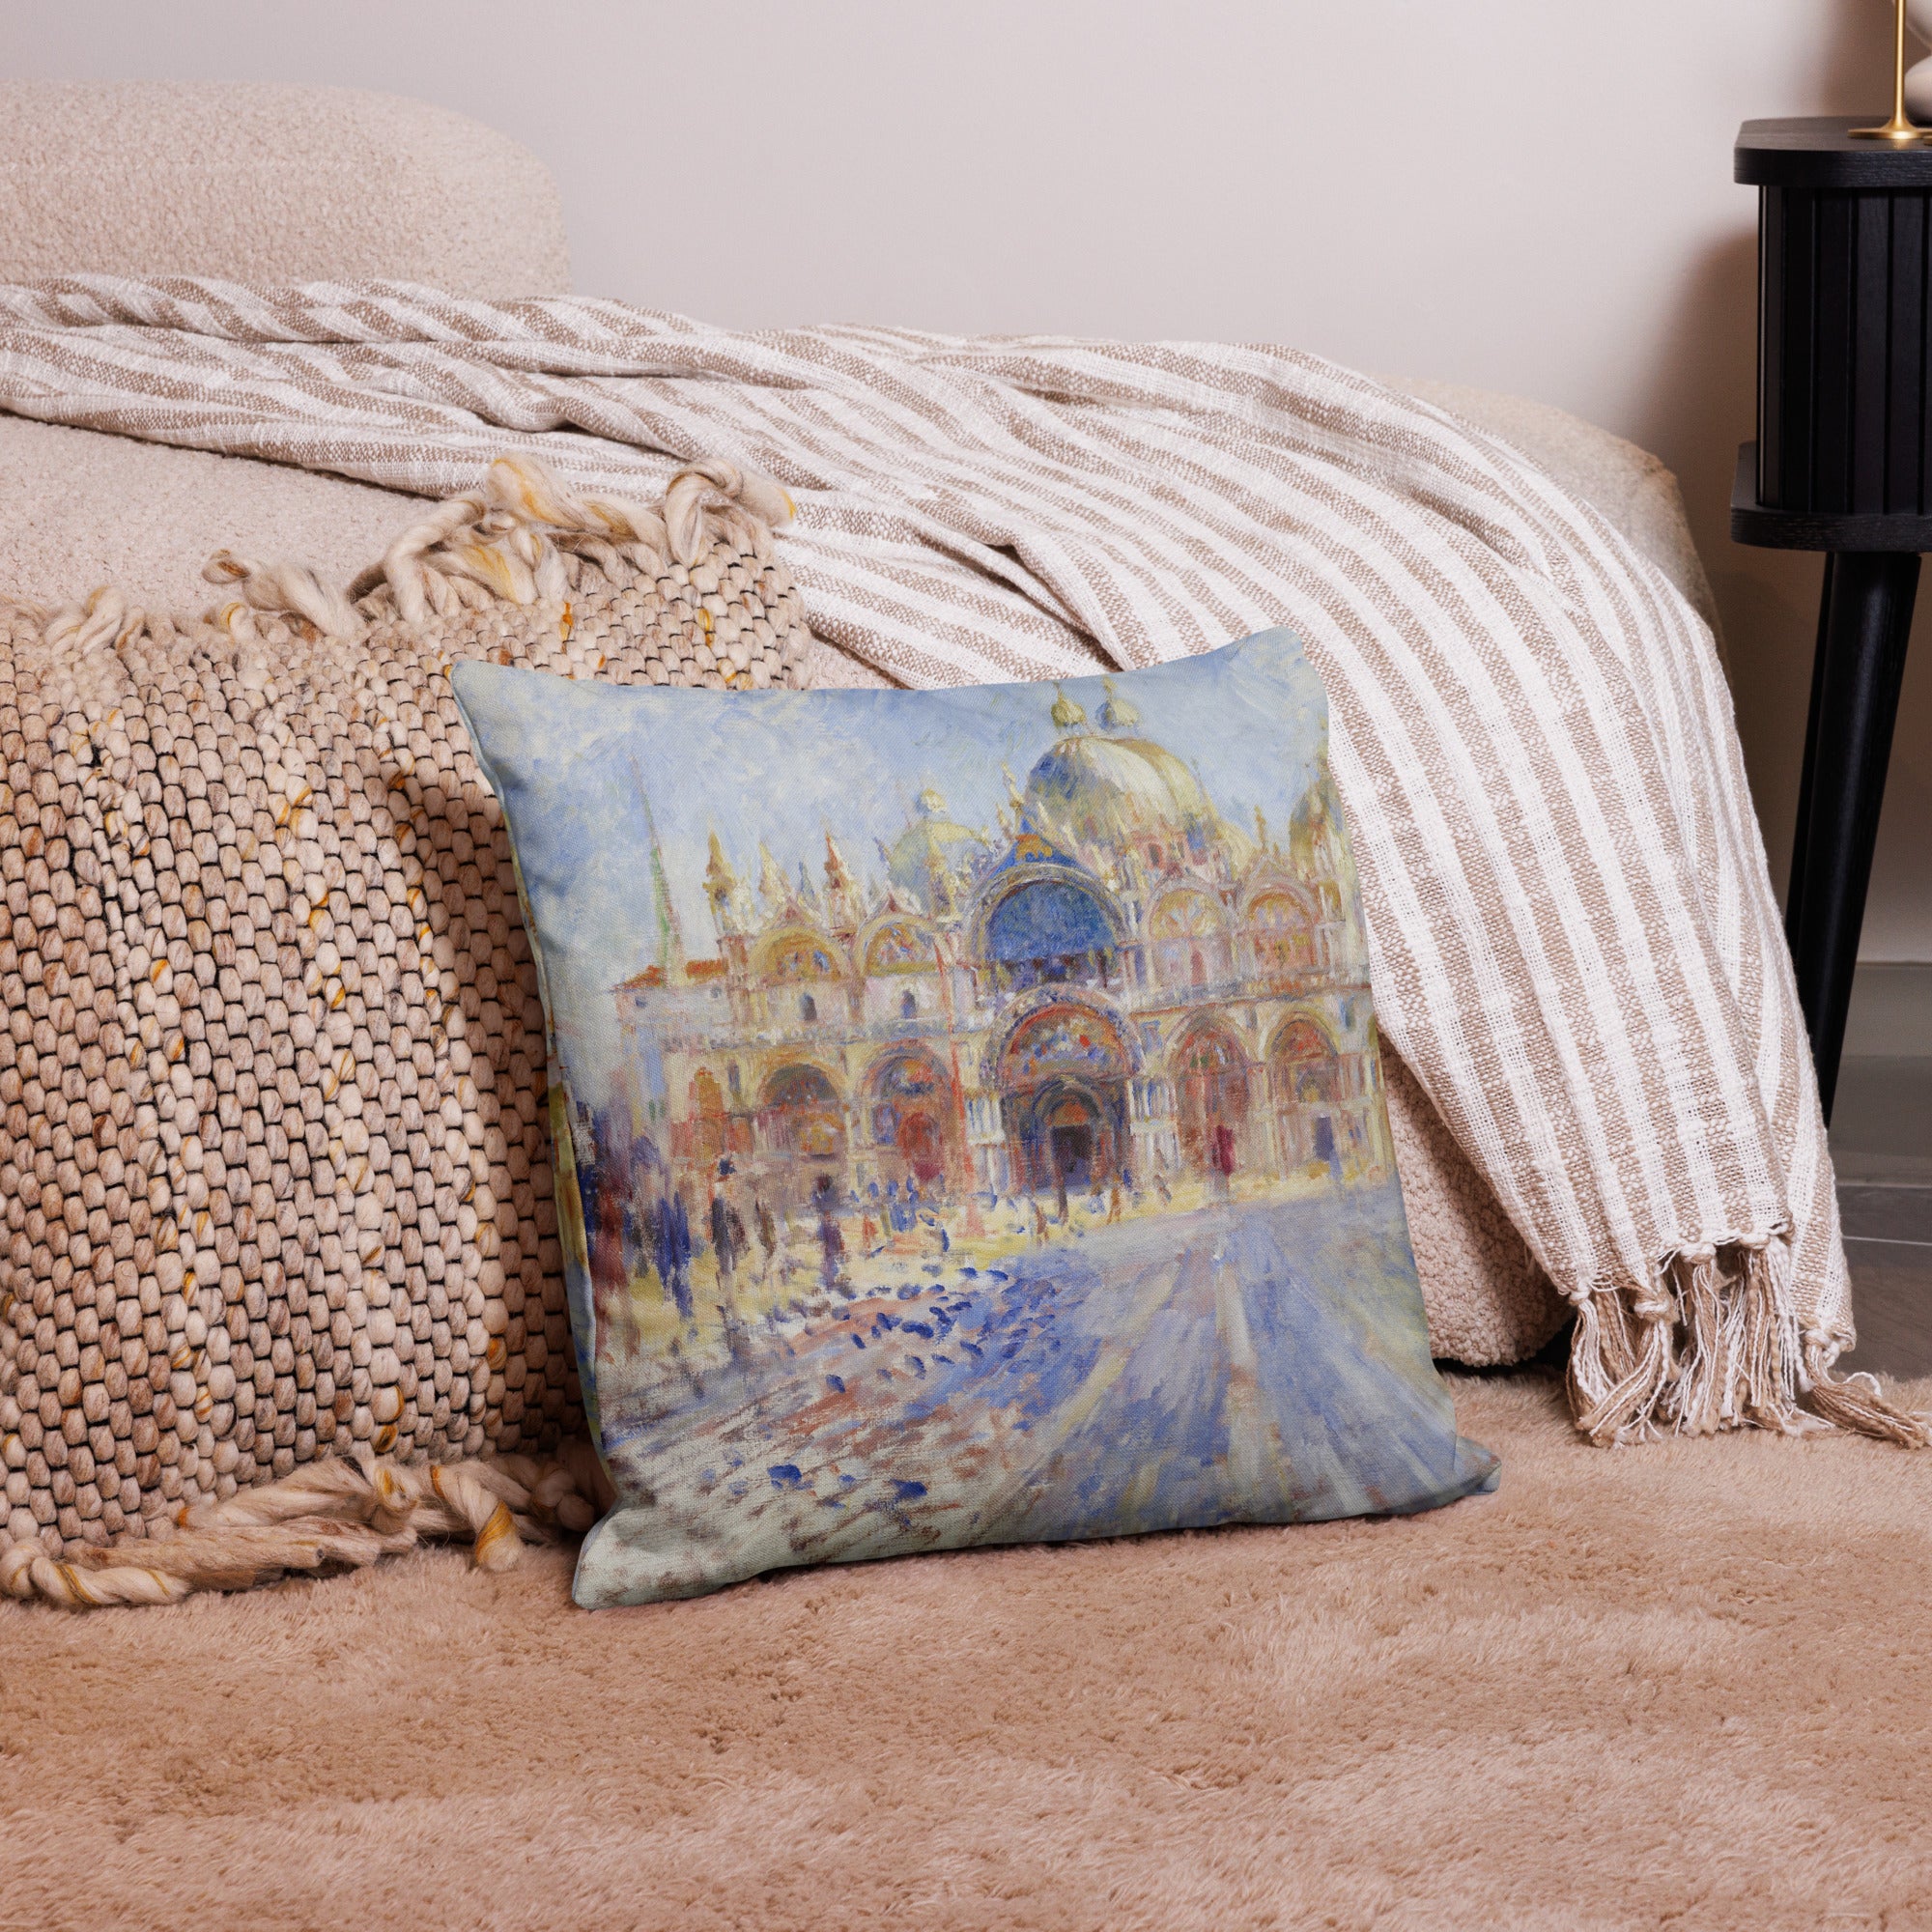 Pierre-Auguste Renoir 'The Piazza San Marco, Venice' Famous Painting Premium Pillow | Premium Art Cushion